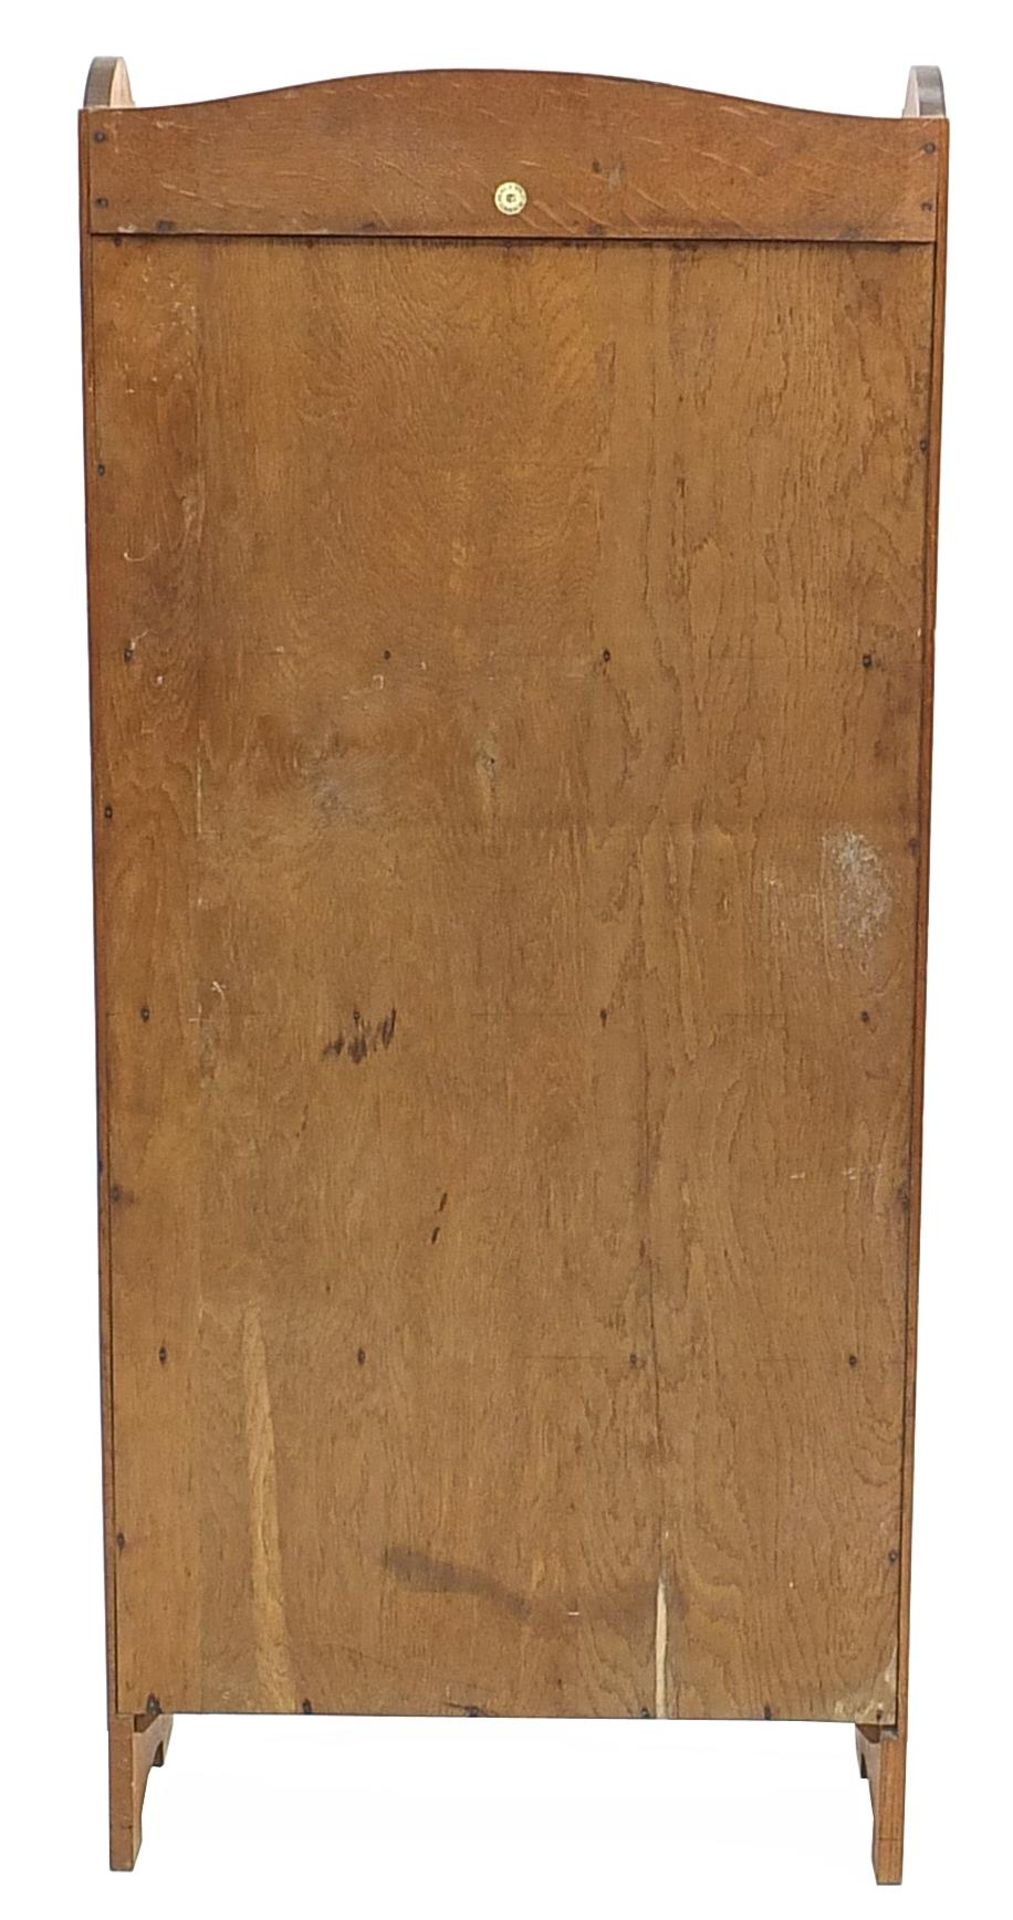 Heal & Son Ltd, Art Deco oak five shelf open bookcase, 120cm H x 53cm W x 18cm D - Image 3 of 4